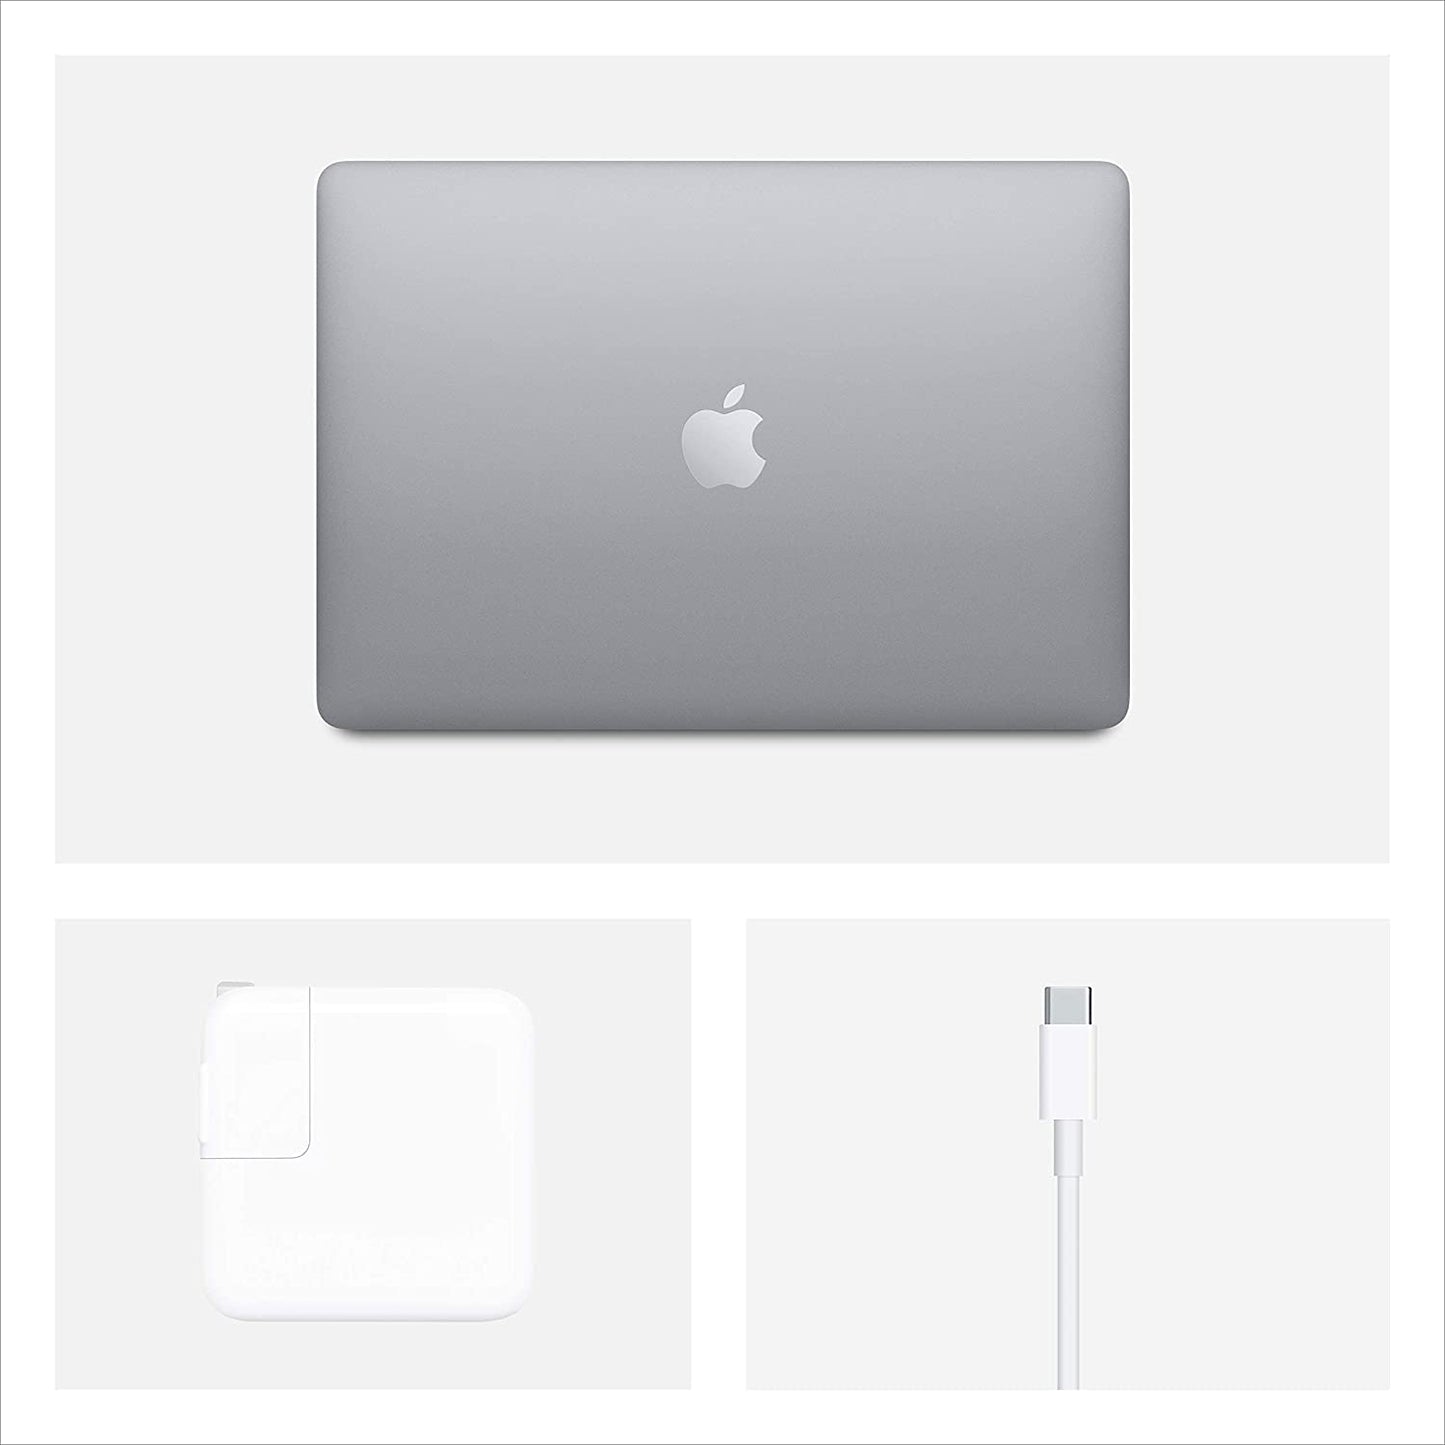 1.1 GHz Intel Core i5 13 インチ + インターネット光ファイバー接続を搭載した 2020 年初頭の Apple MacBook Air です。